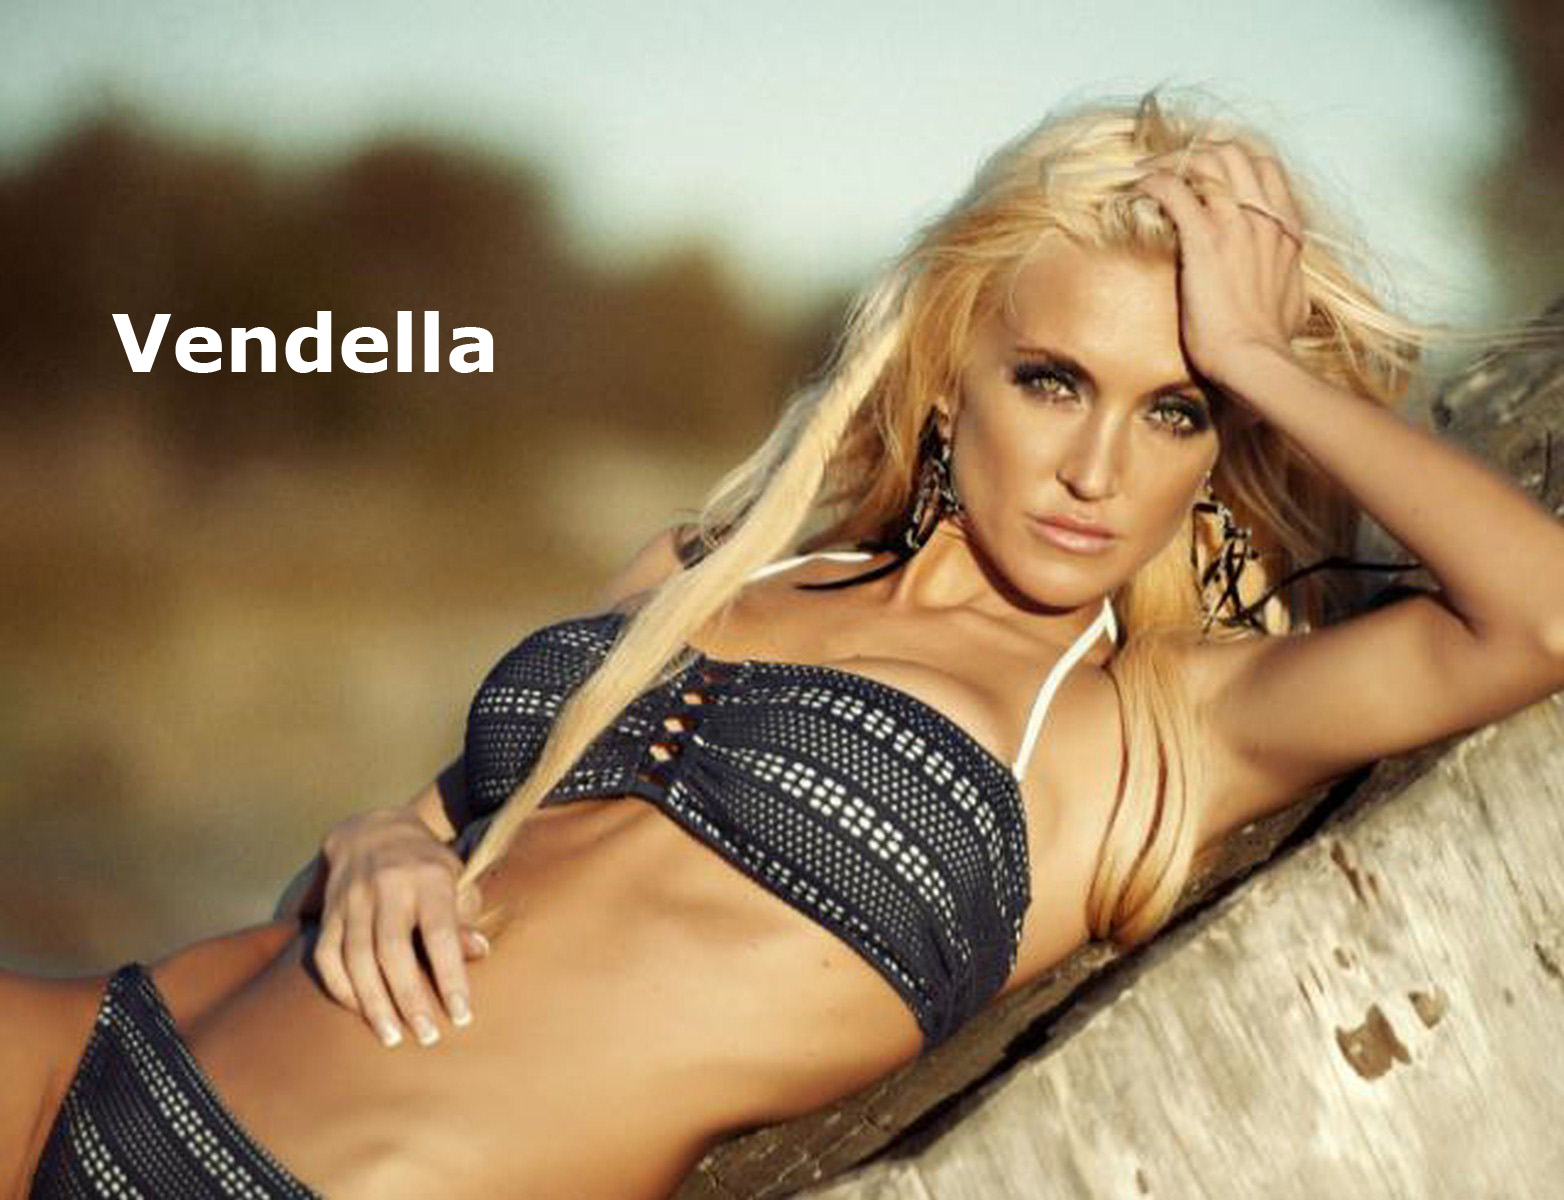 Model: Miss Vendella Sonia